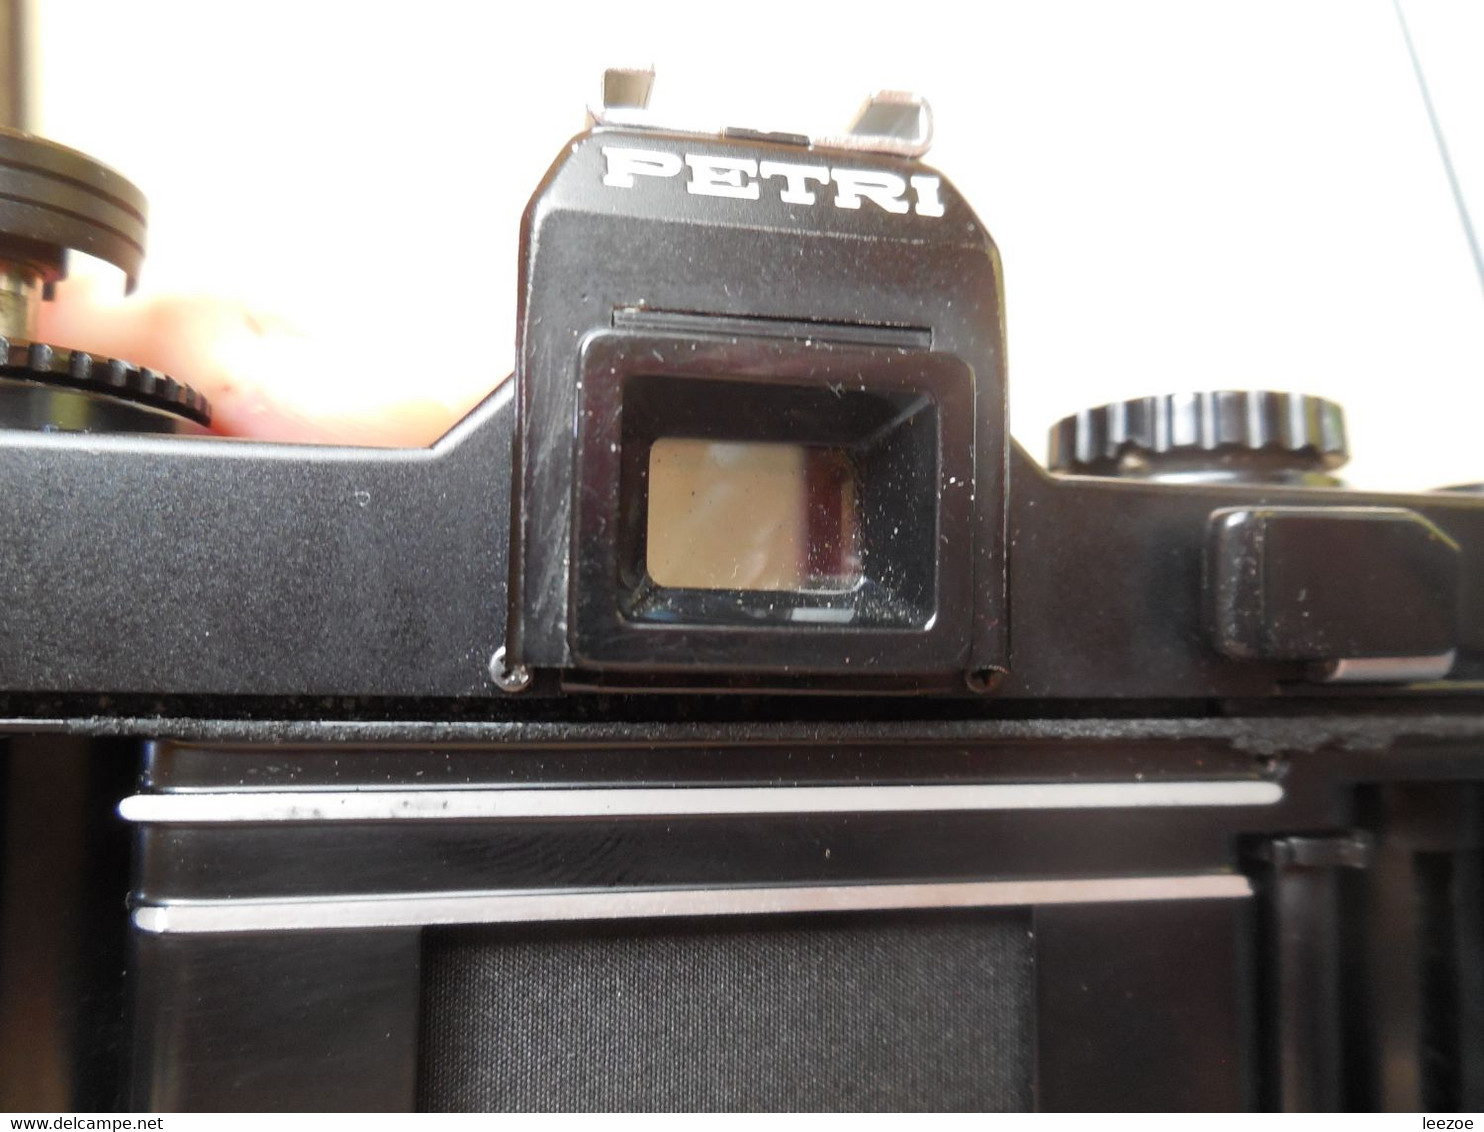 appareil photo PETRI MF-1, bien regarder les photos, objectif très souple, levier d'armement bloquer